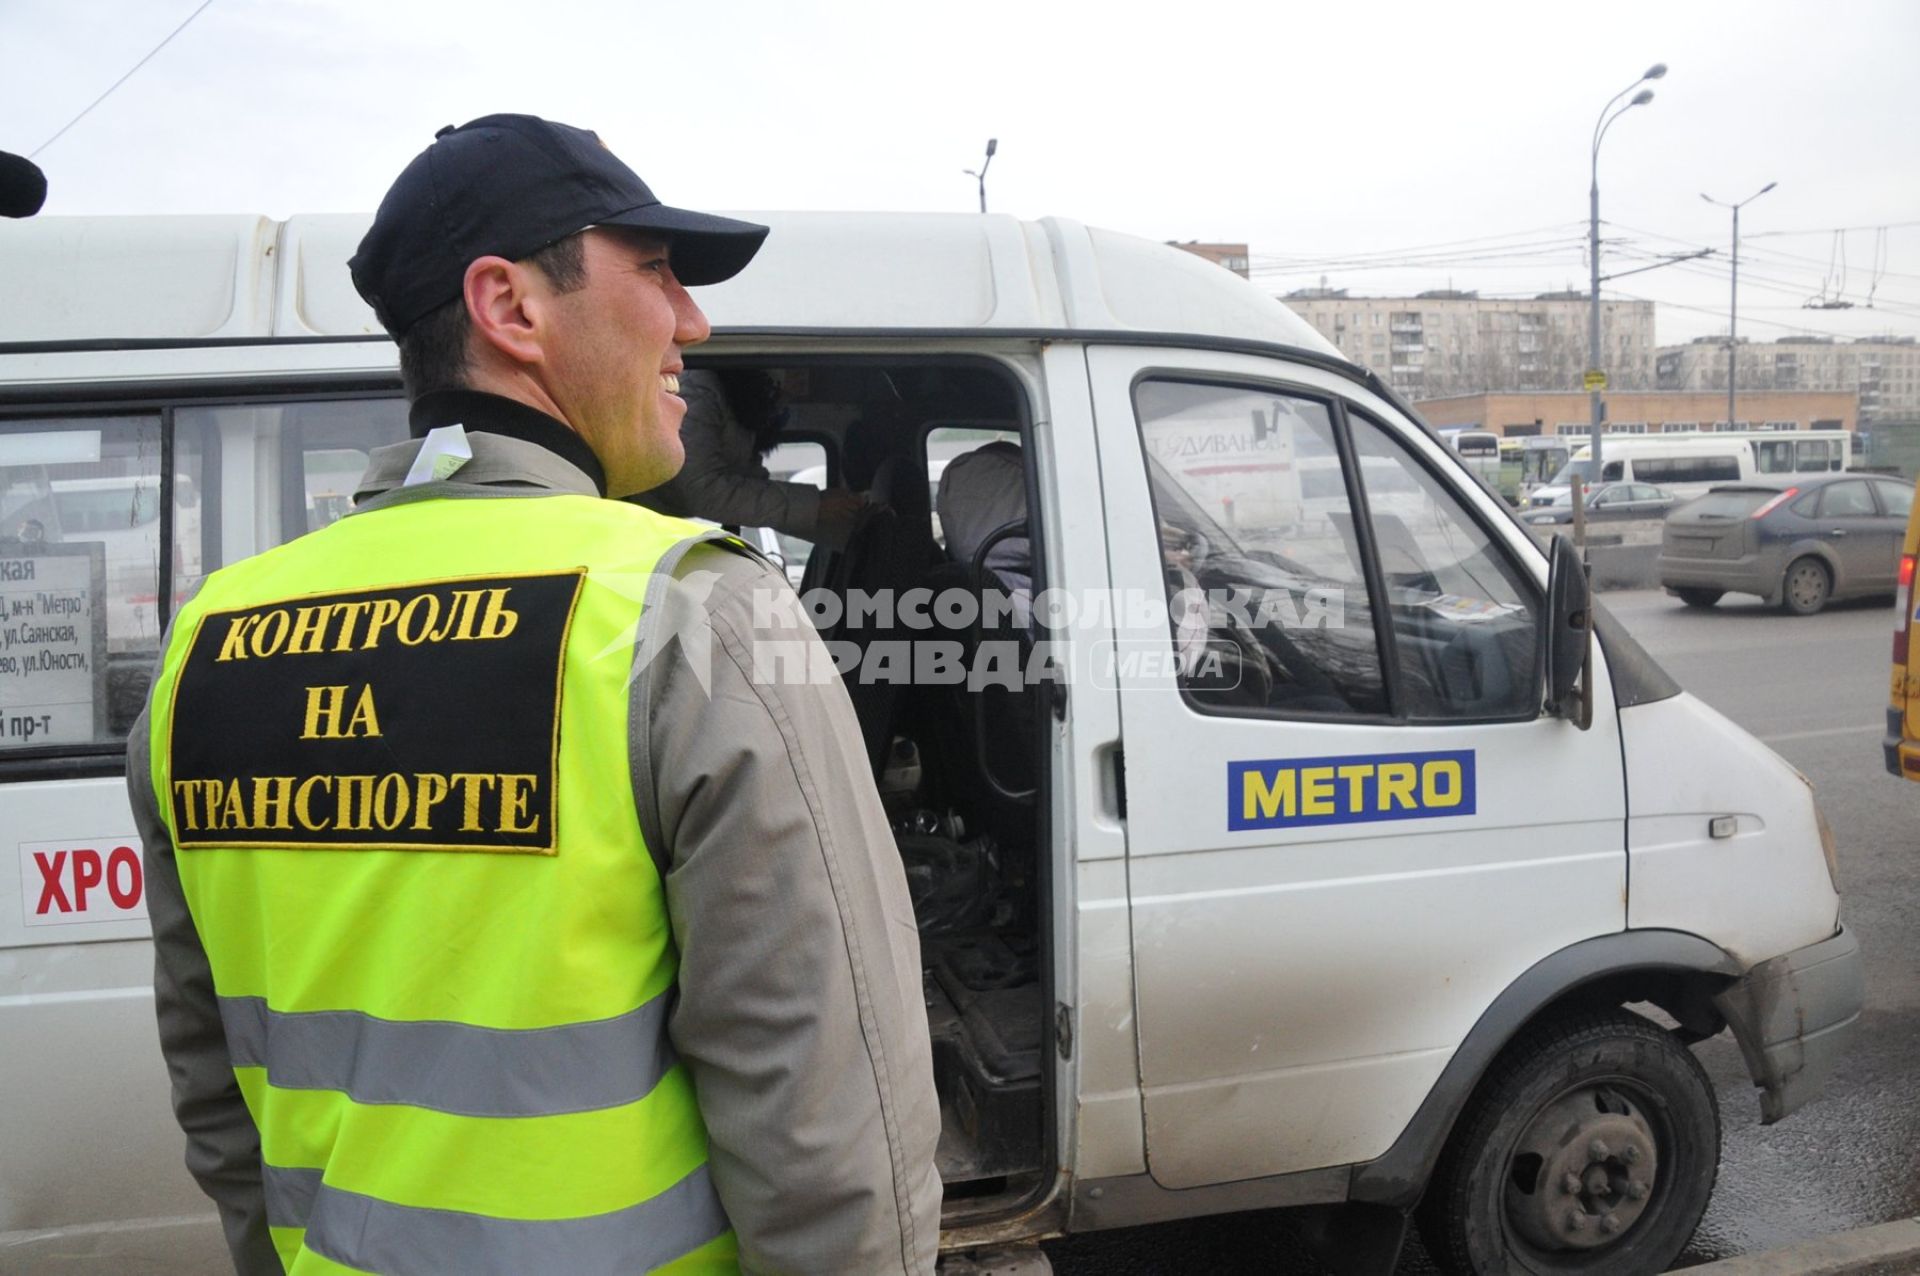 Сотрудники Госавтоинспекции совместно с ФМС провели рейд по выявлению незаконных маршрутных такси. На снимке: мужчина в жилете с надписью `Контроль на транспорте`